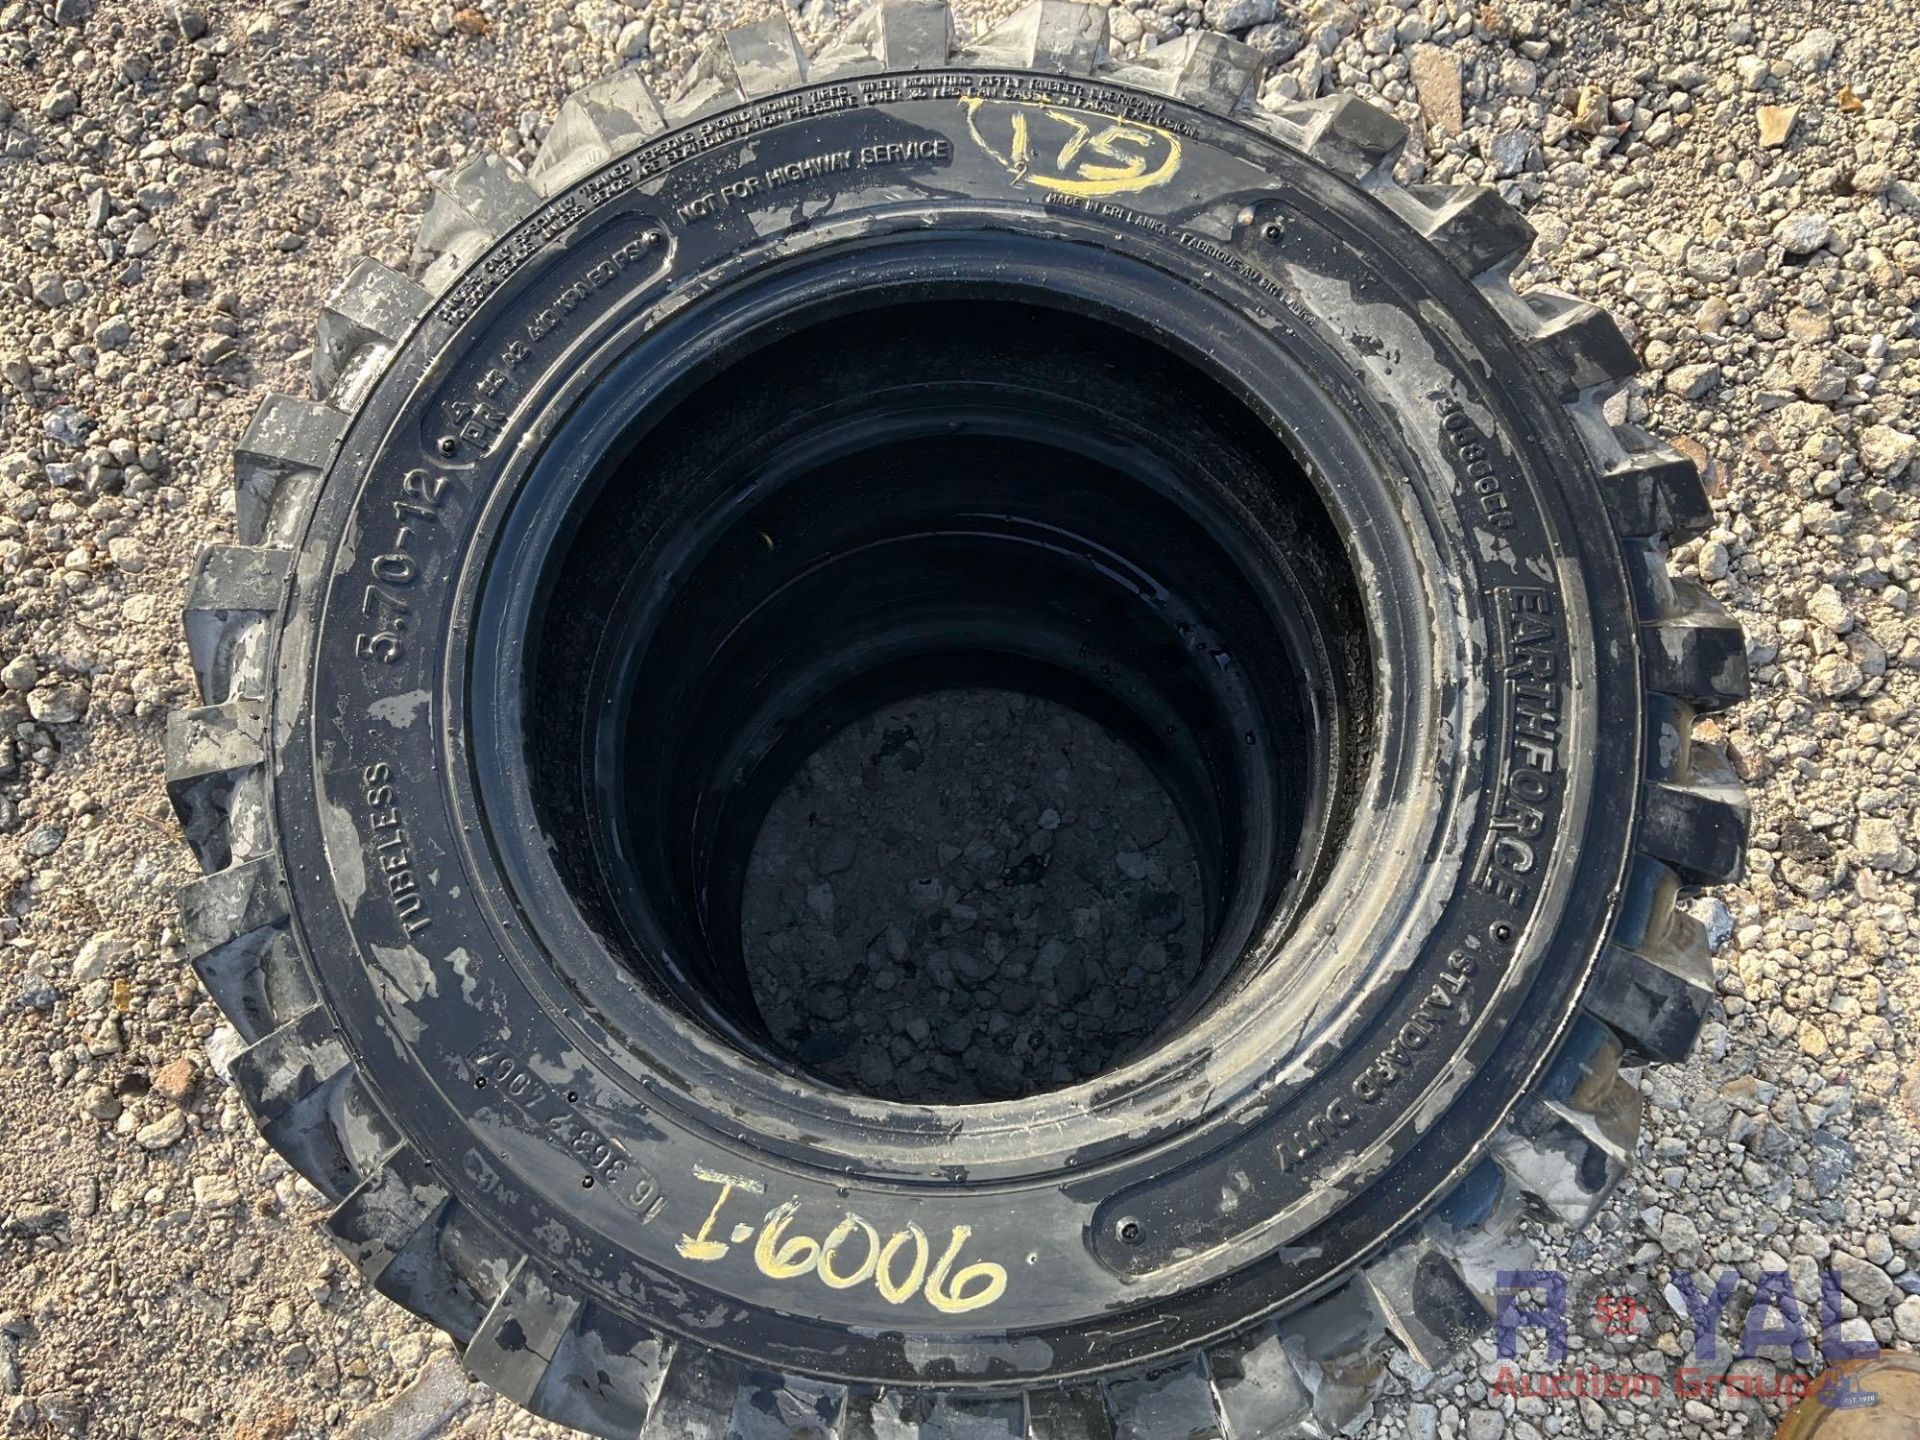 Earthforce Tubeless Tires 5.70-12 - Image 5 of 5